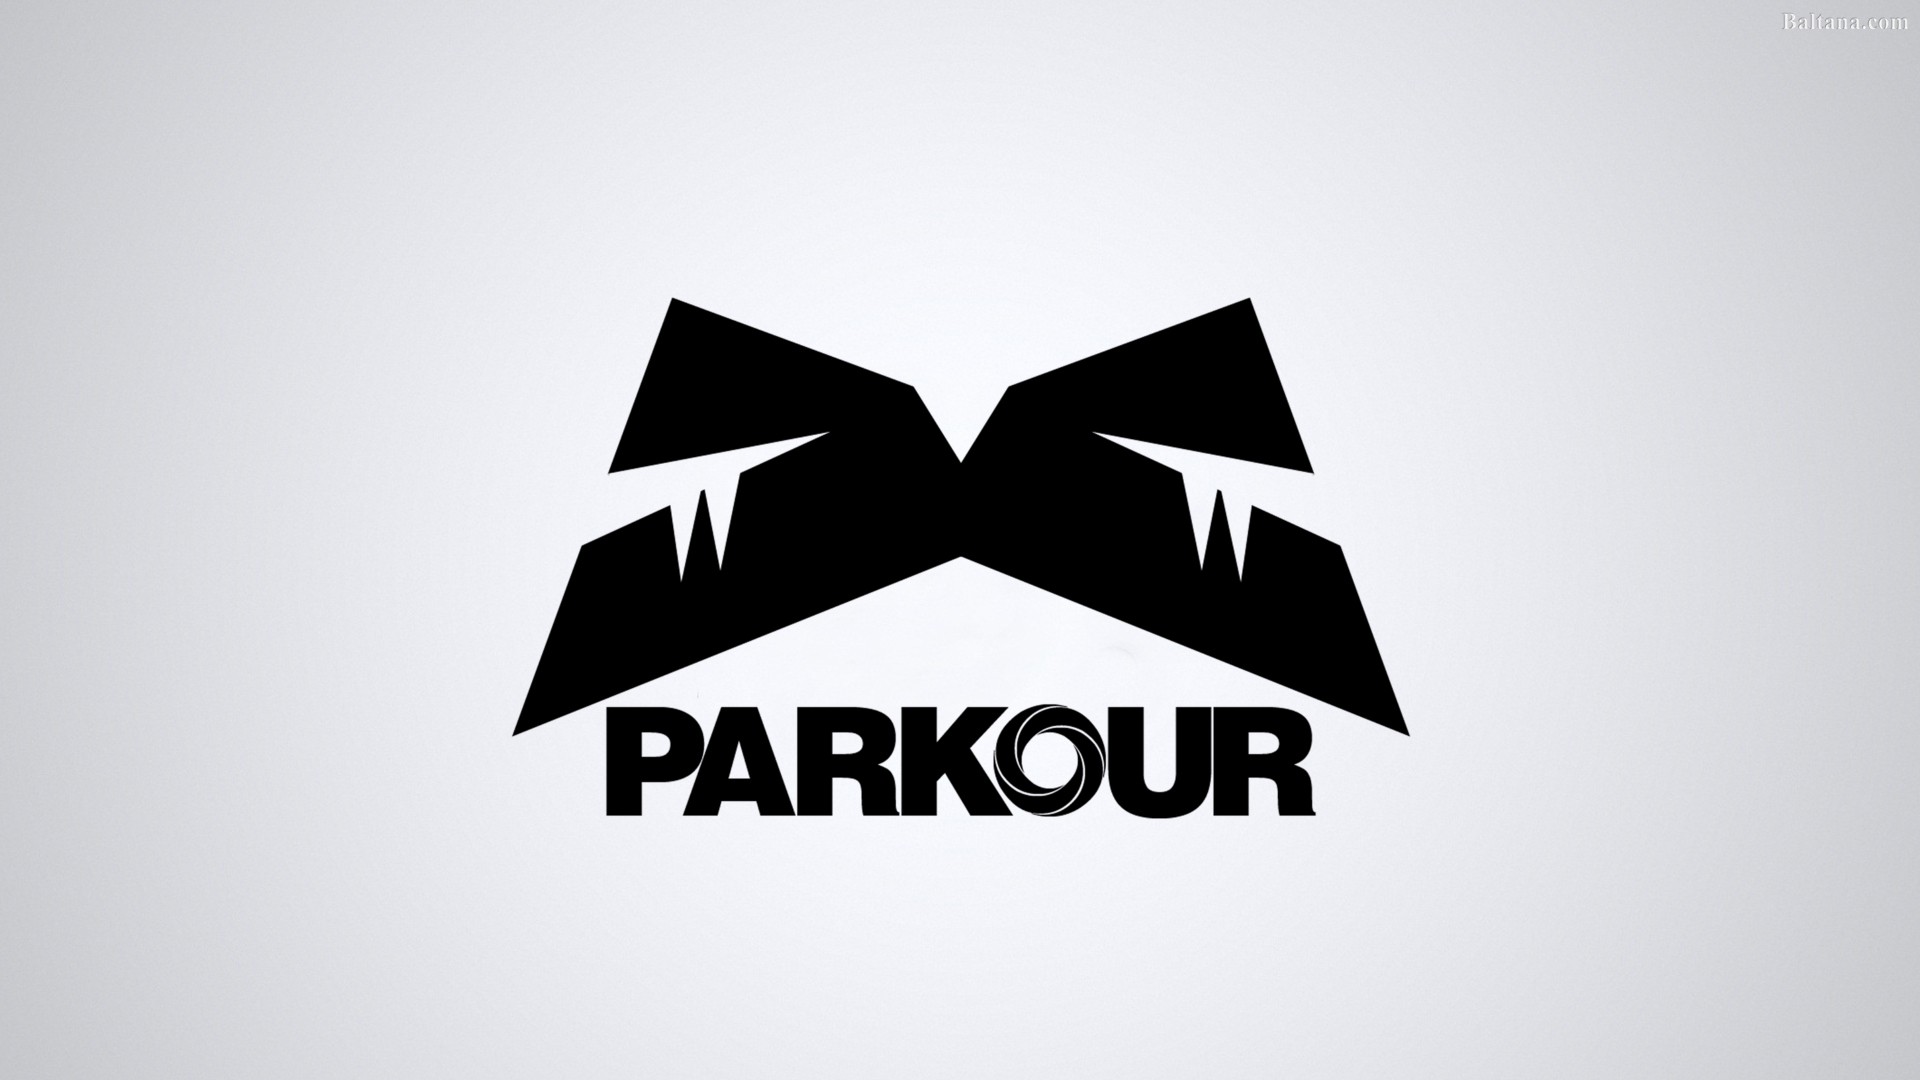 Parkour Wallpaper HD Background Image Pics Photos